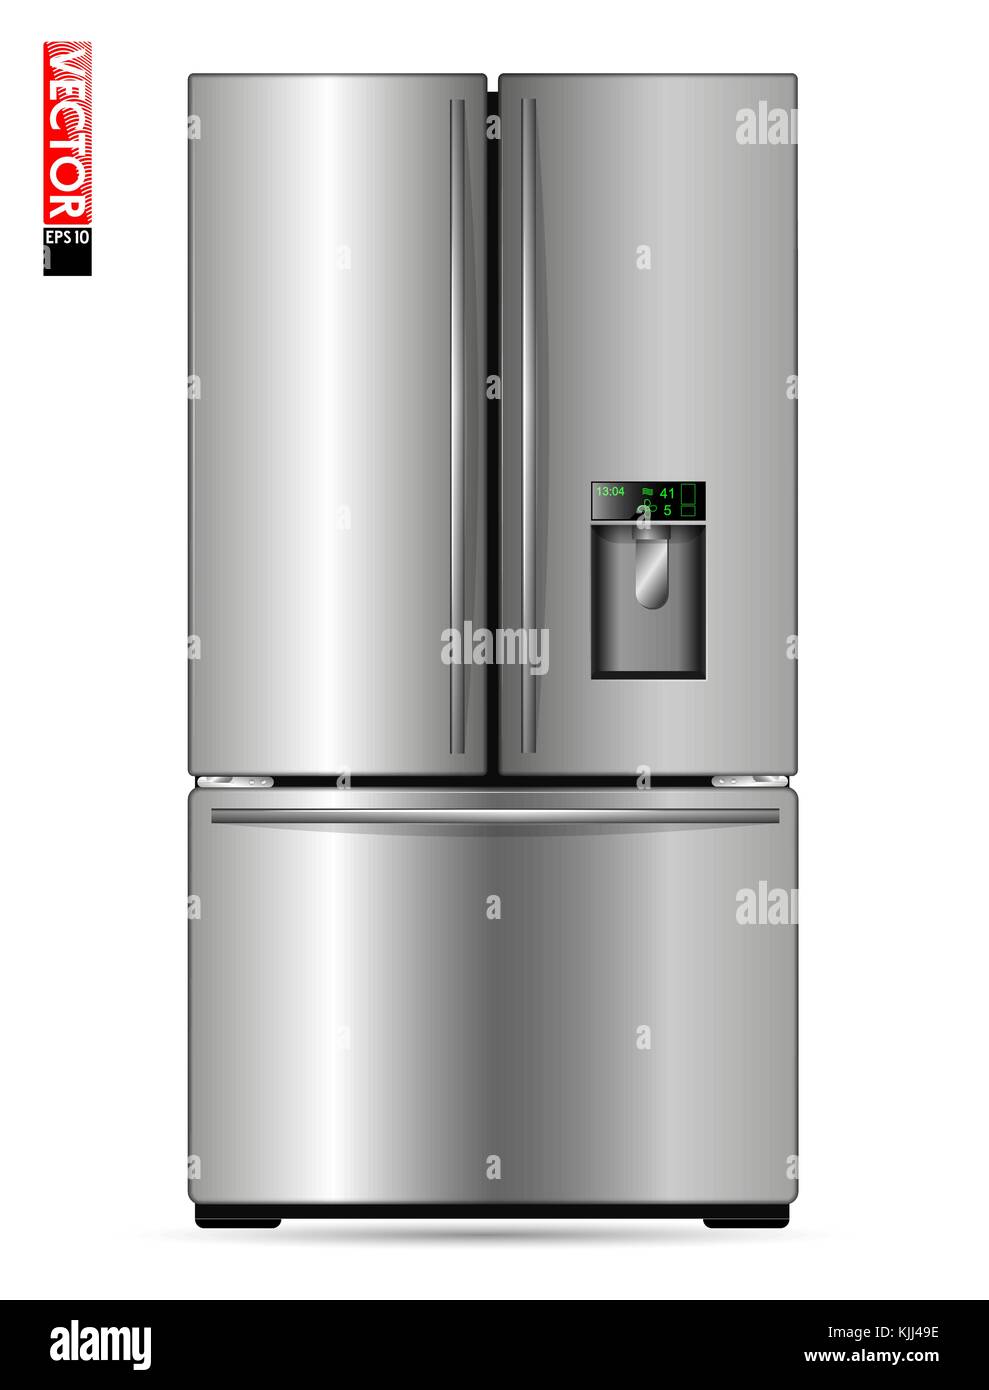 Grande doppia ala frigorifero con rivestimento in metallo, display e freezer. Adatto per illustrare le cucine, prodotti o gli elettrodomestici. vista frontale. Illustrazione Vettoriale